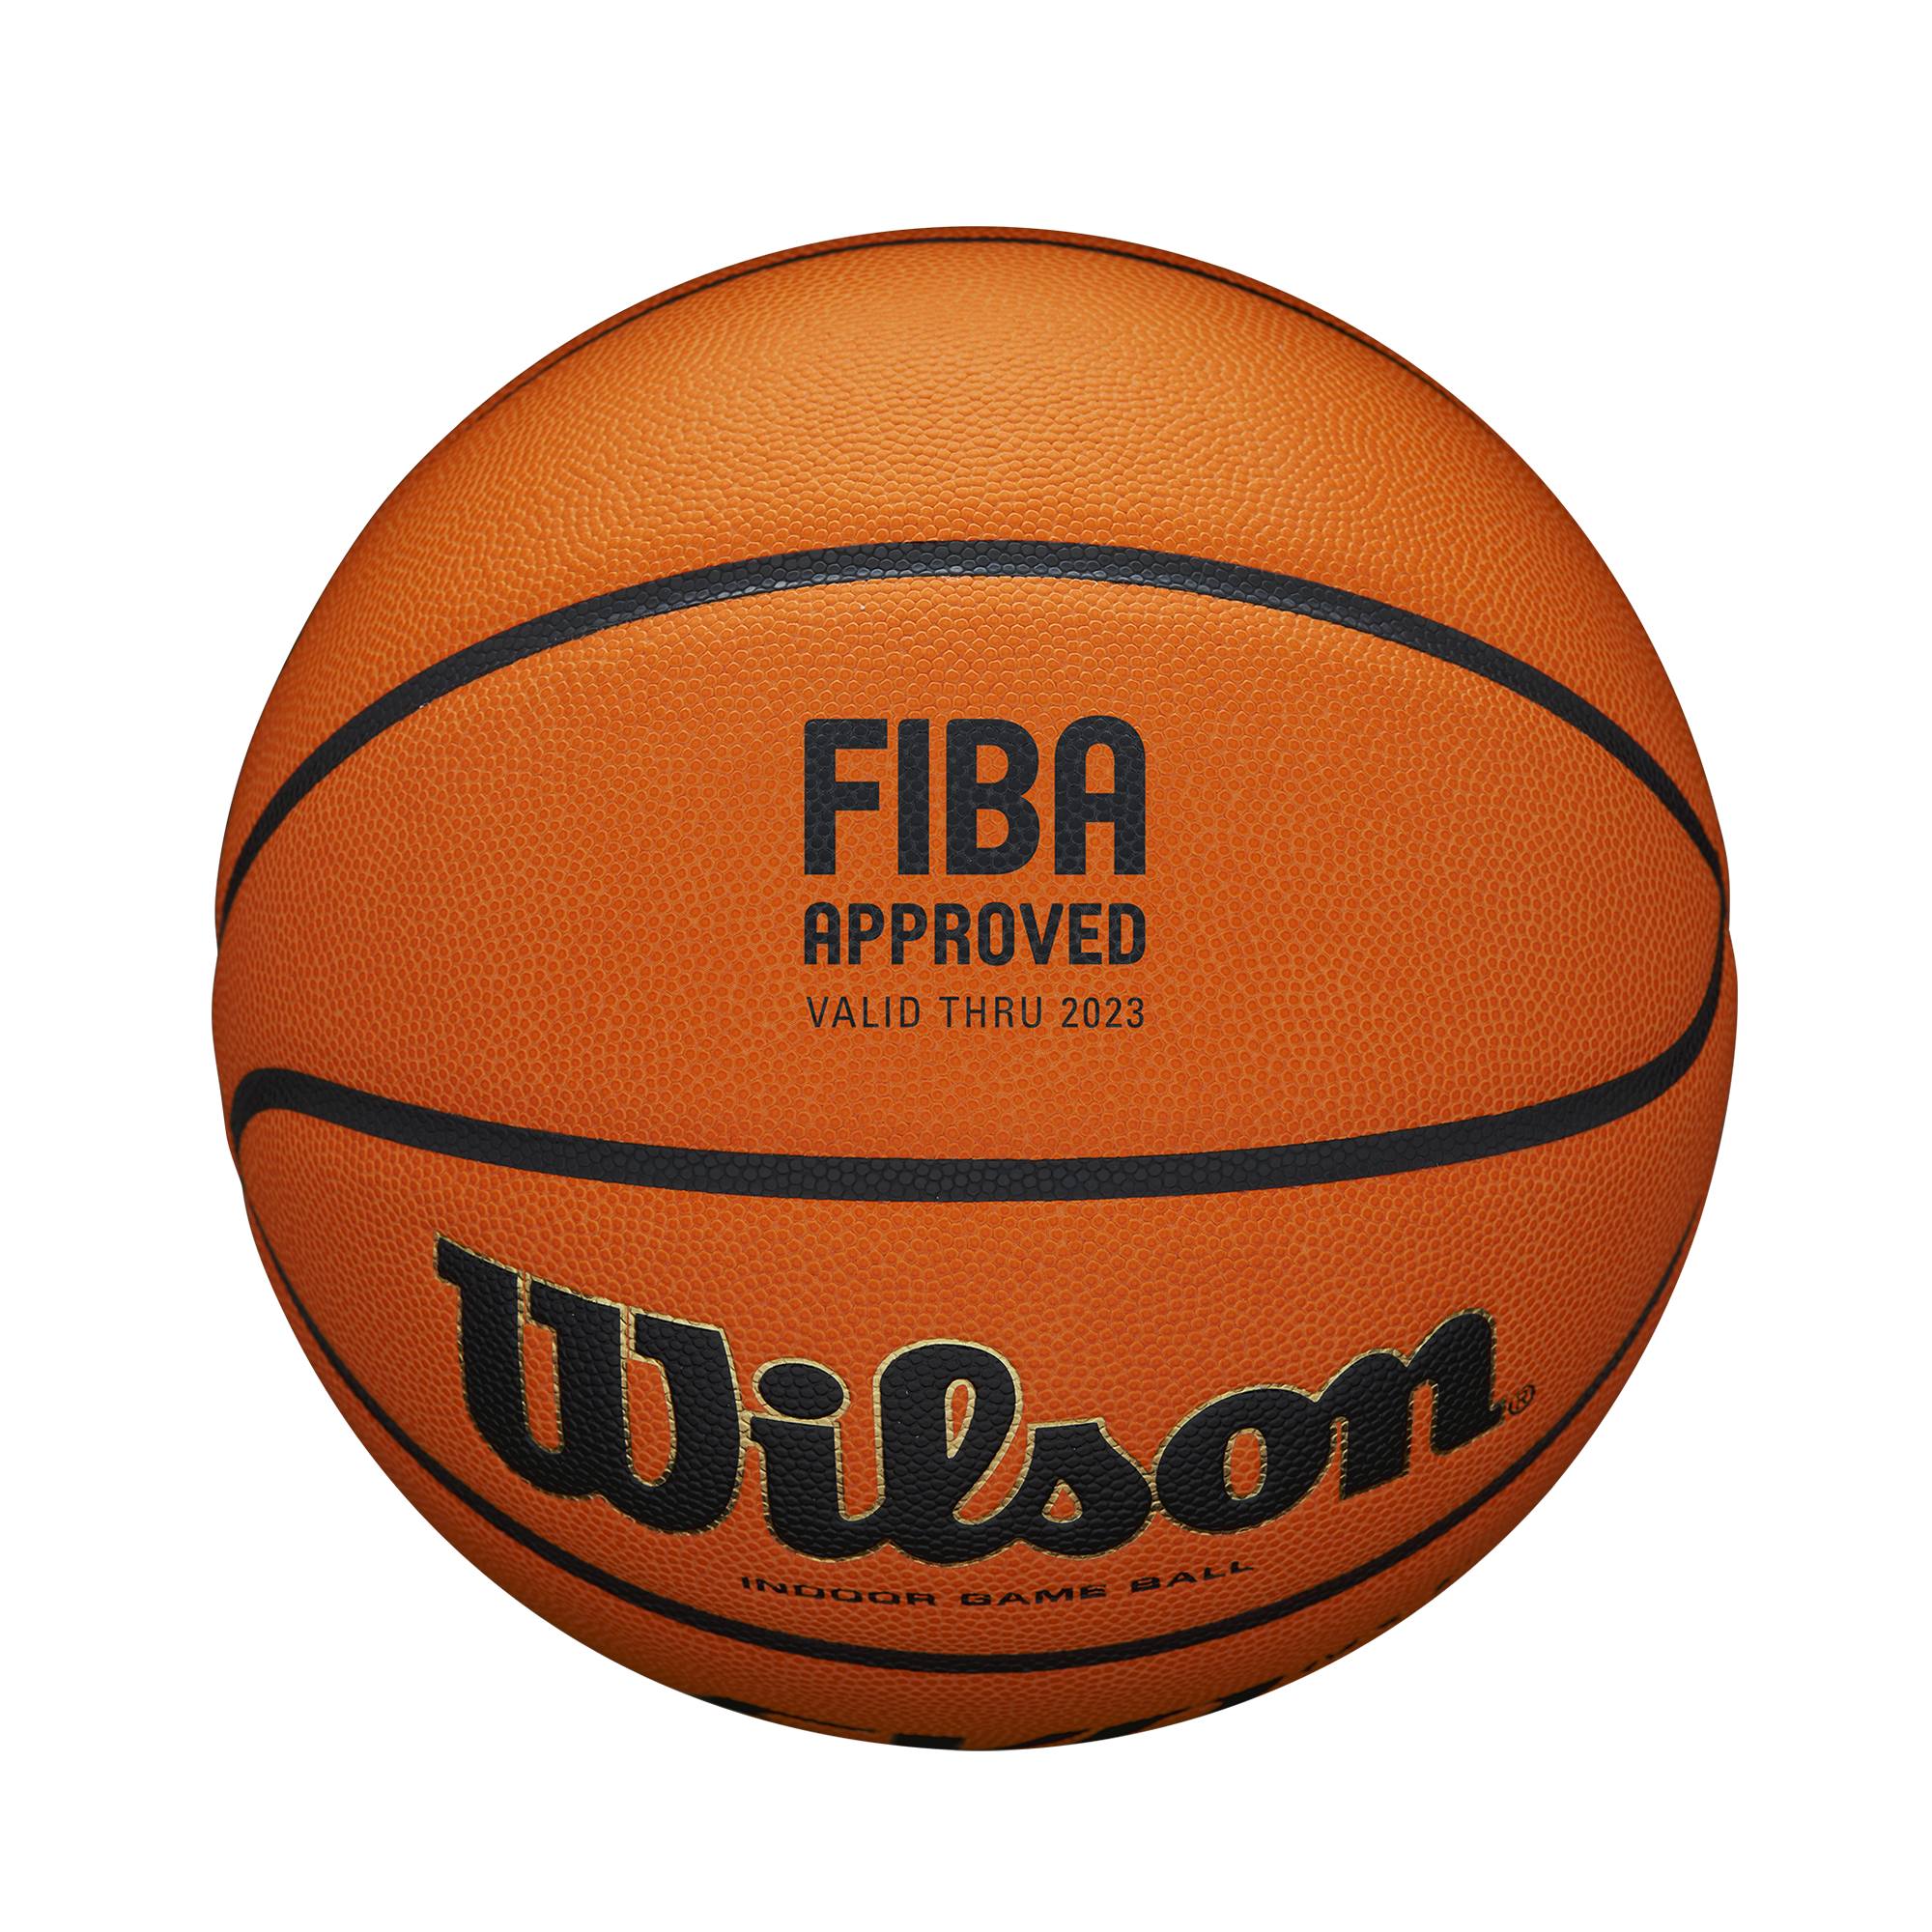 Wilson Evo NXT FIBA Game Basketball